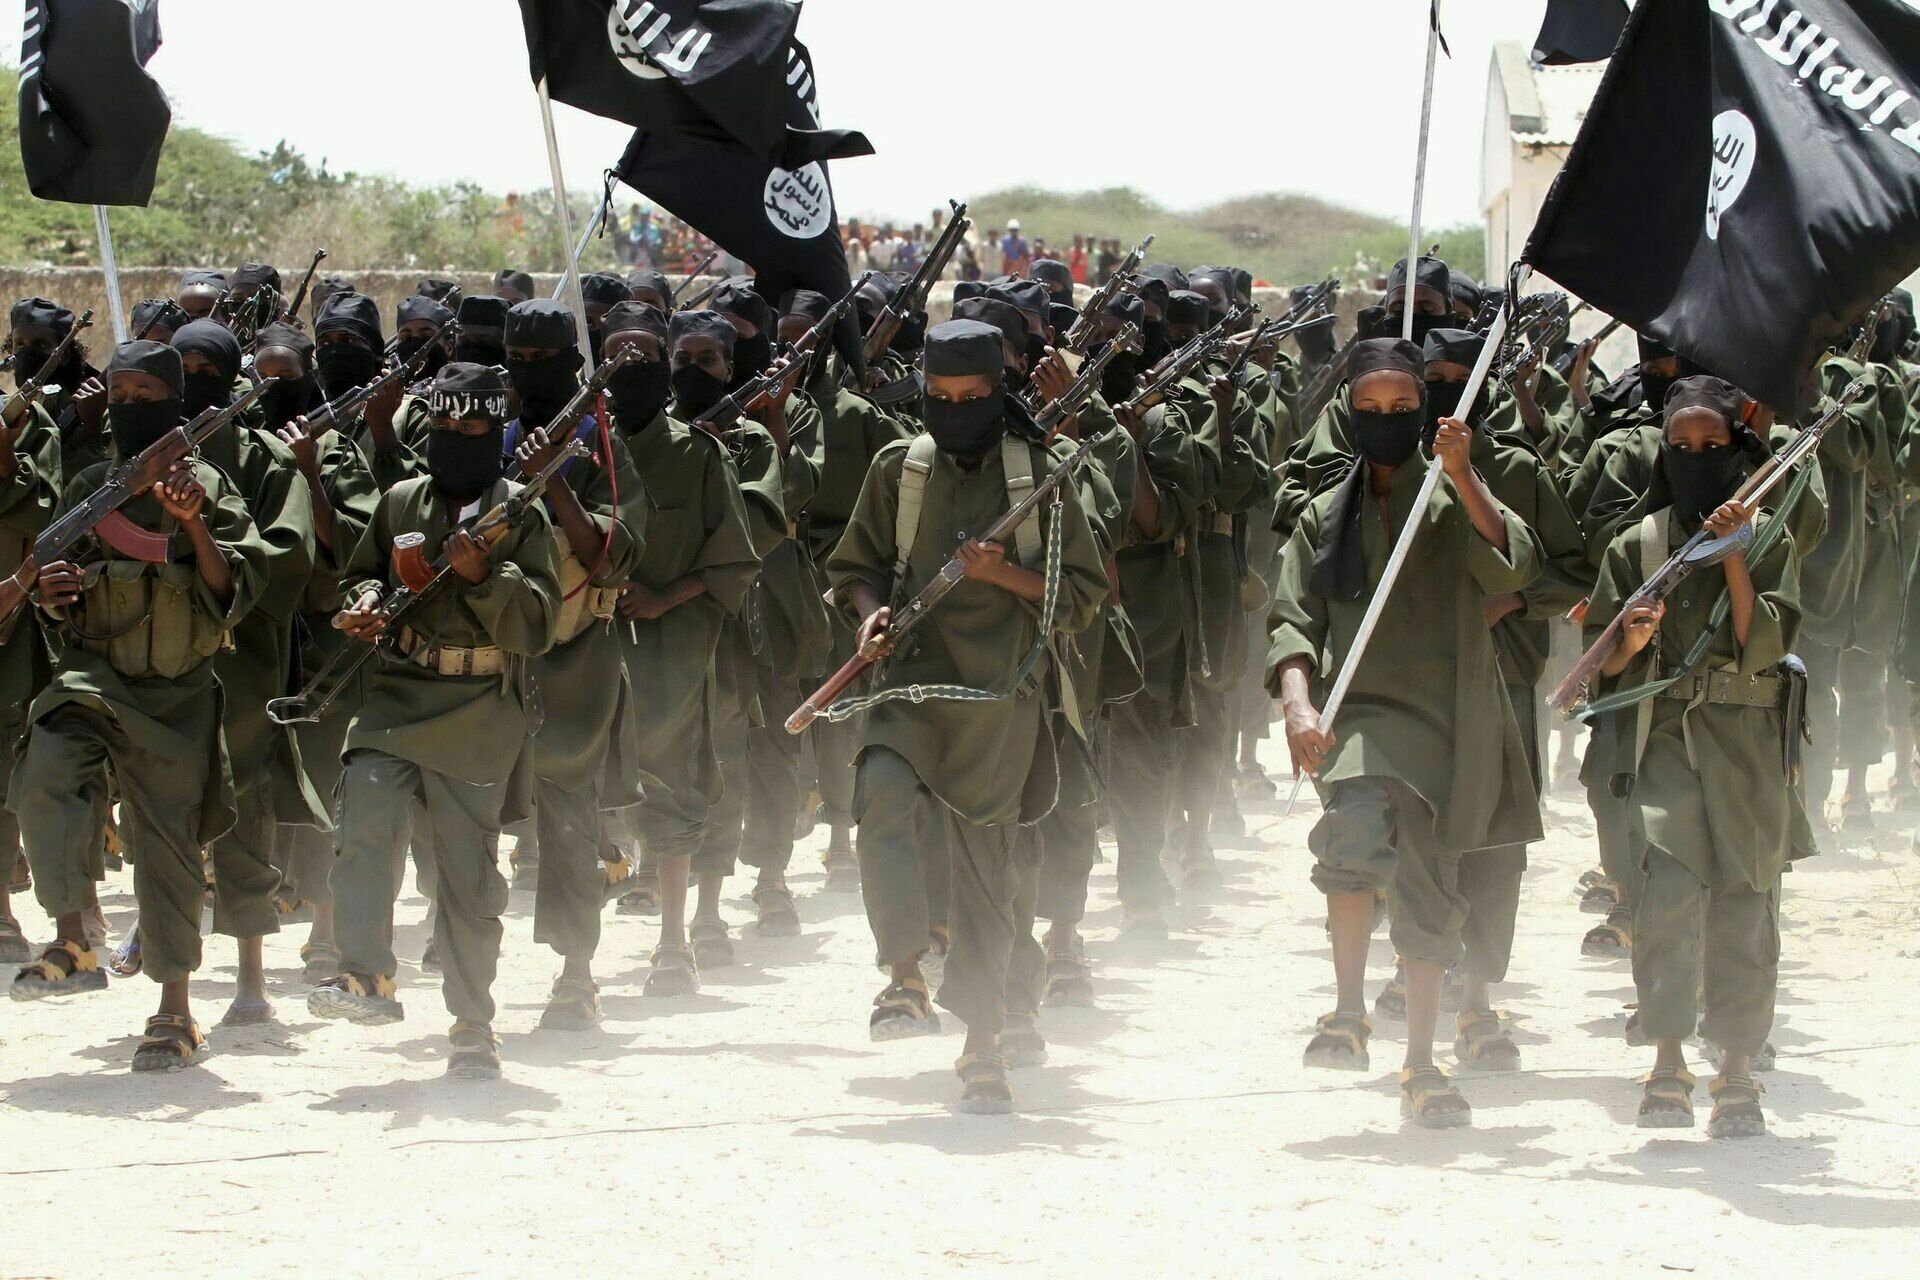 СМИ: боевики ИГИЛ использовали в Сирии оружие с электроникой из России